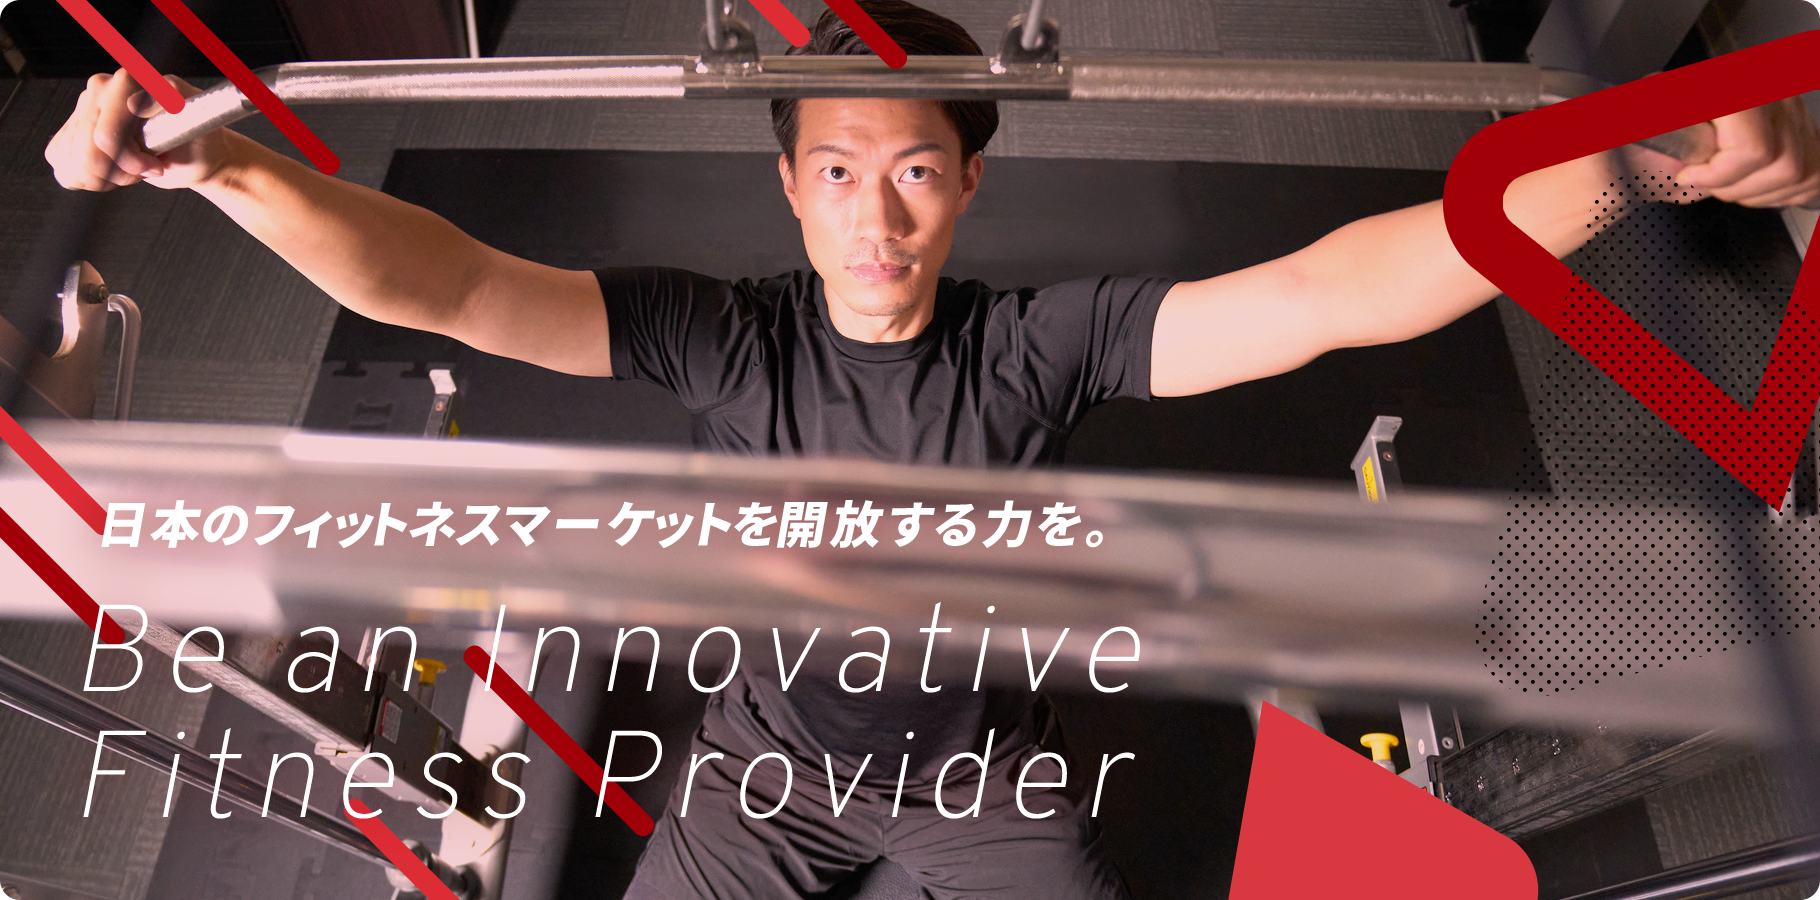 日本のフィットネスマーケットを開放する力を。Be an InnovativeFitness Provider